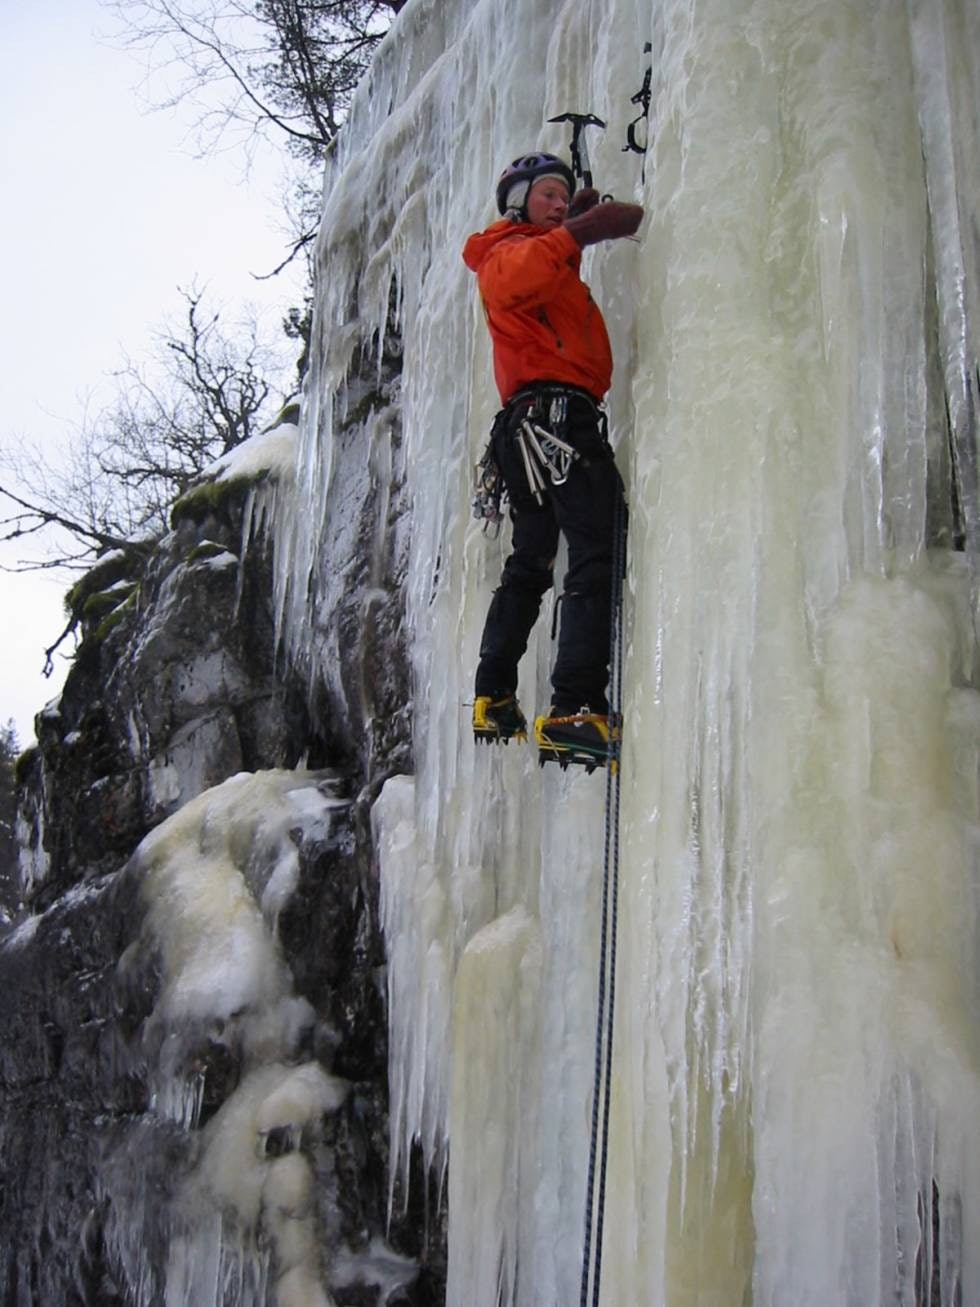 KLATRER: Øystein Stangeland var en svært dyktig klatrer og skikjører. Foto: Ture Bjørgen